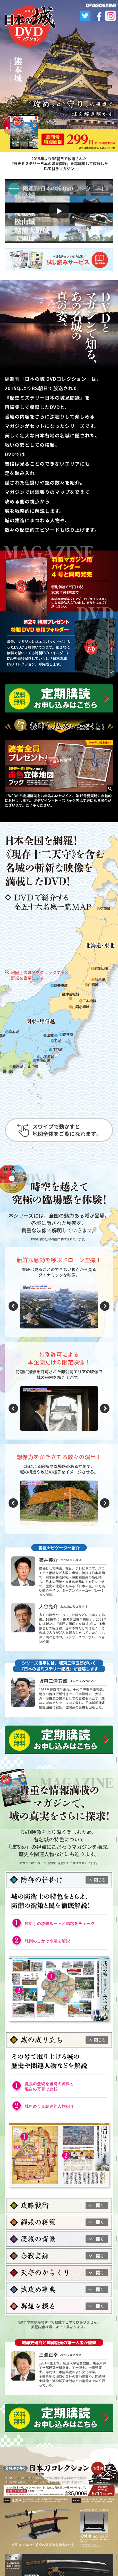 隔週刊 日本の城DVDコレクション_sp_1